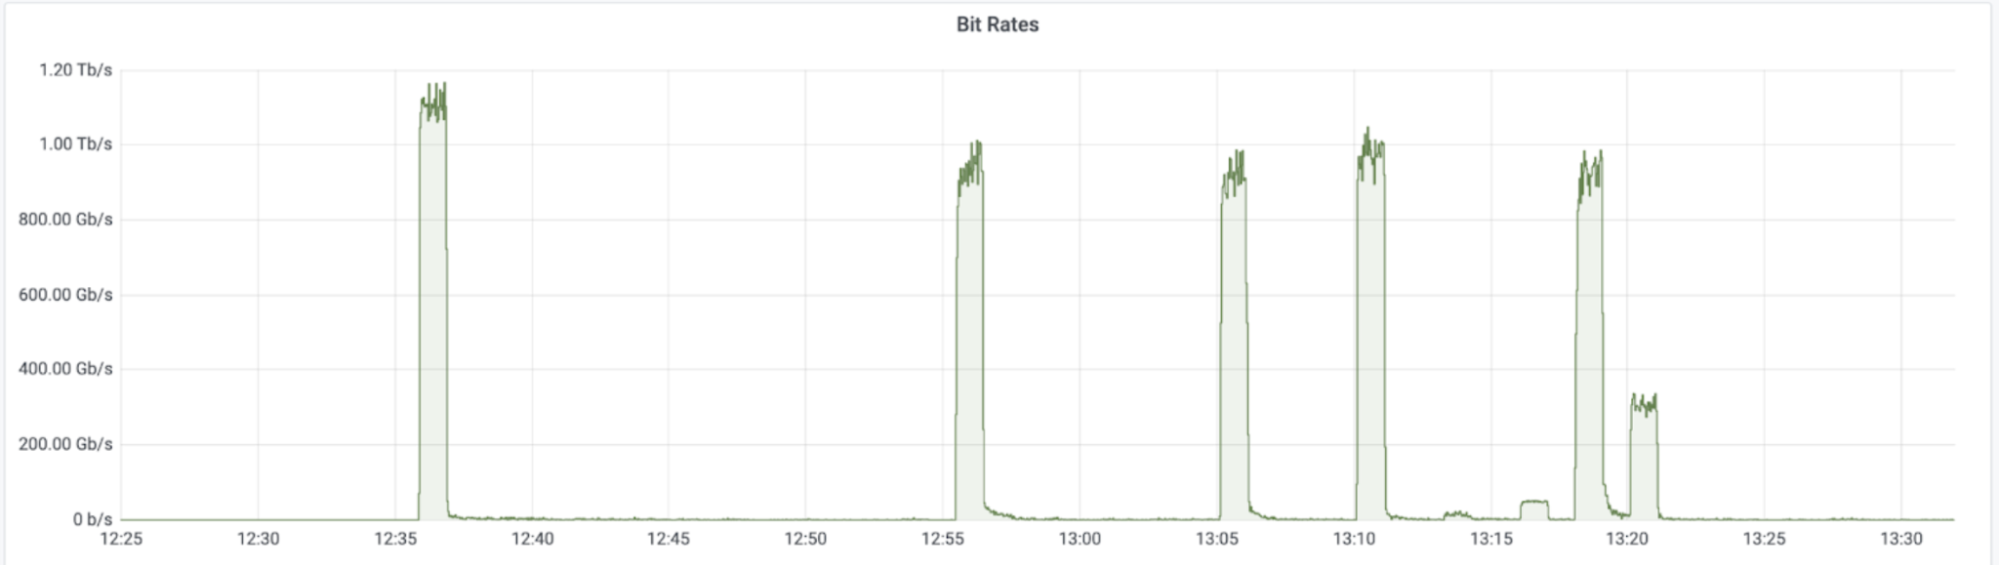 Darstellung eines Mirai-Botnetz-Angriffs mit einem Spitzenwert von 1,2 Tbit/s